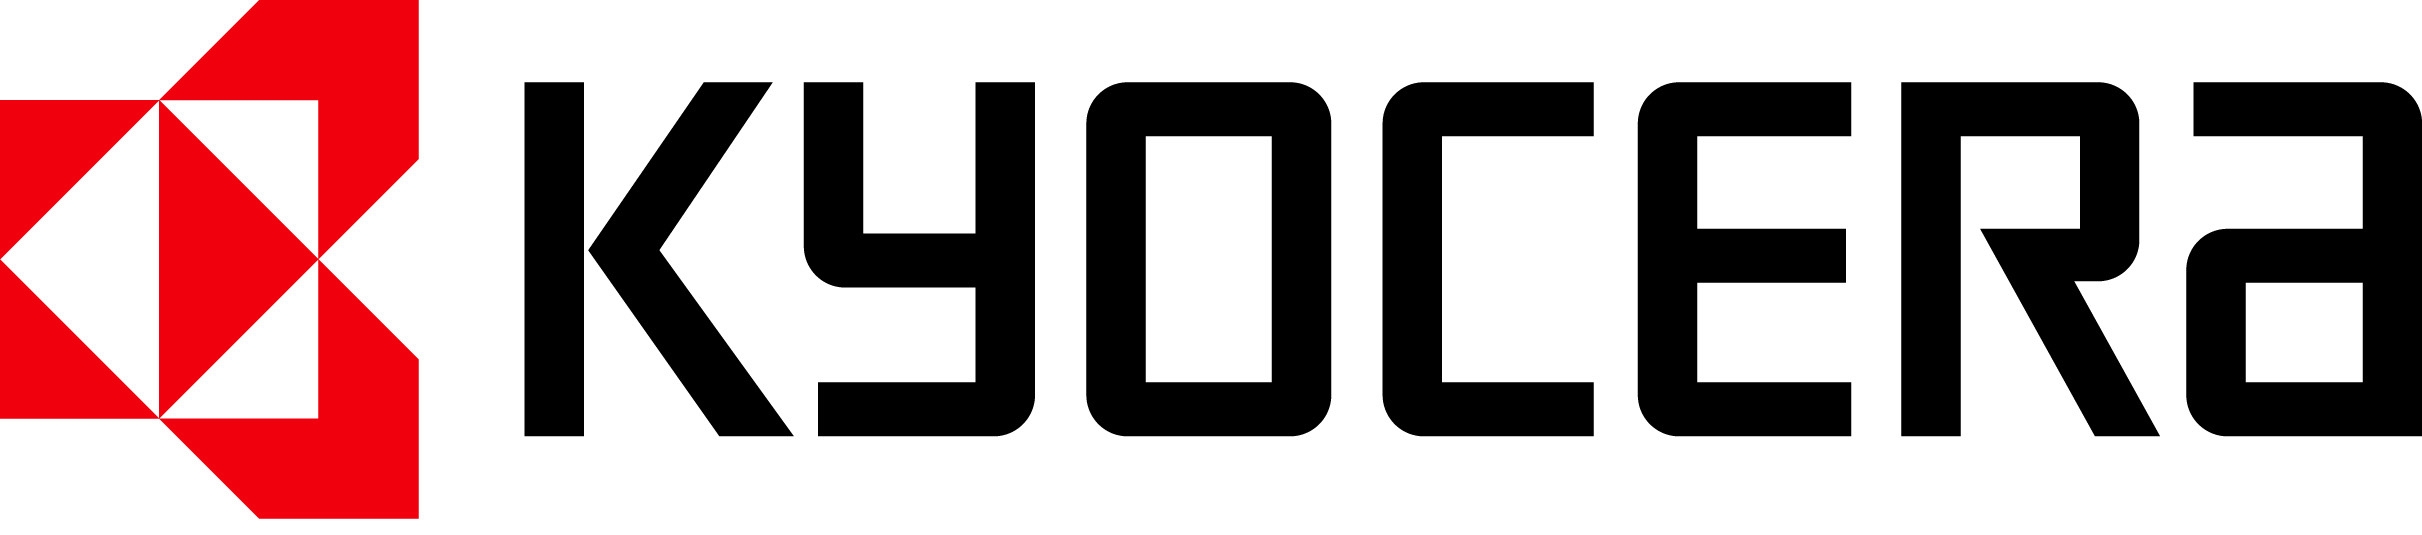 Kyocera Logo photo - 1